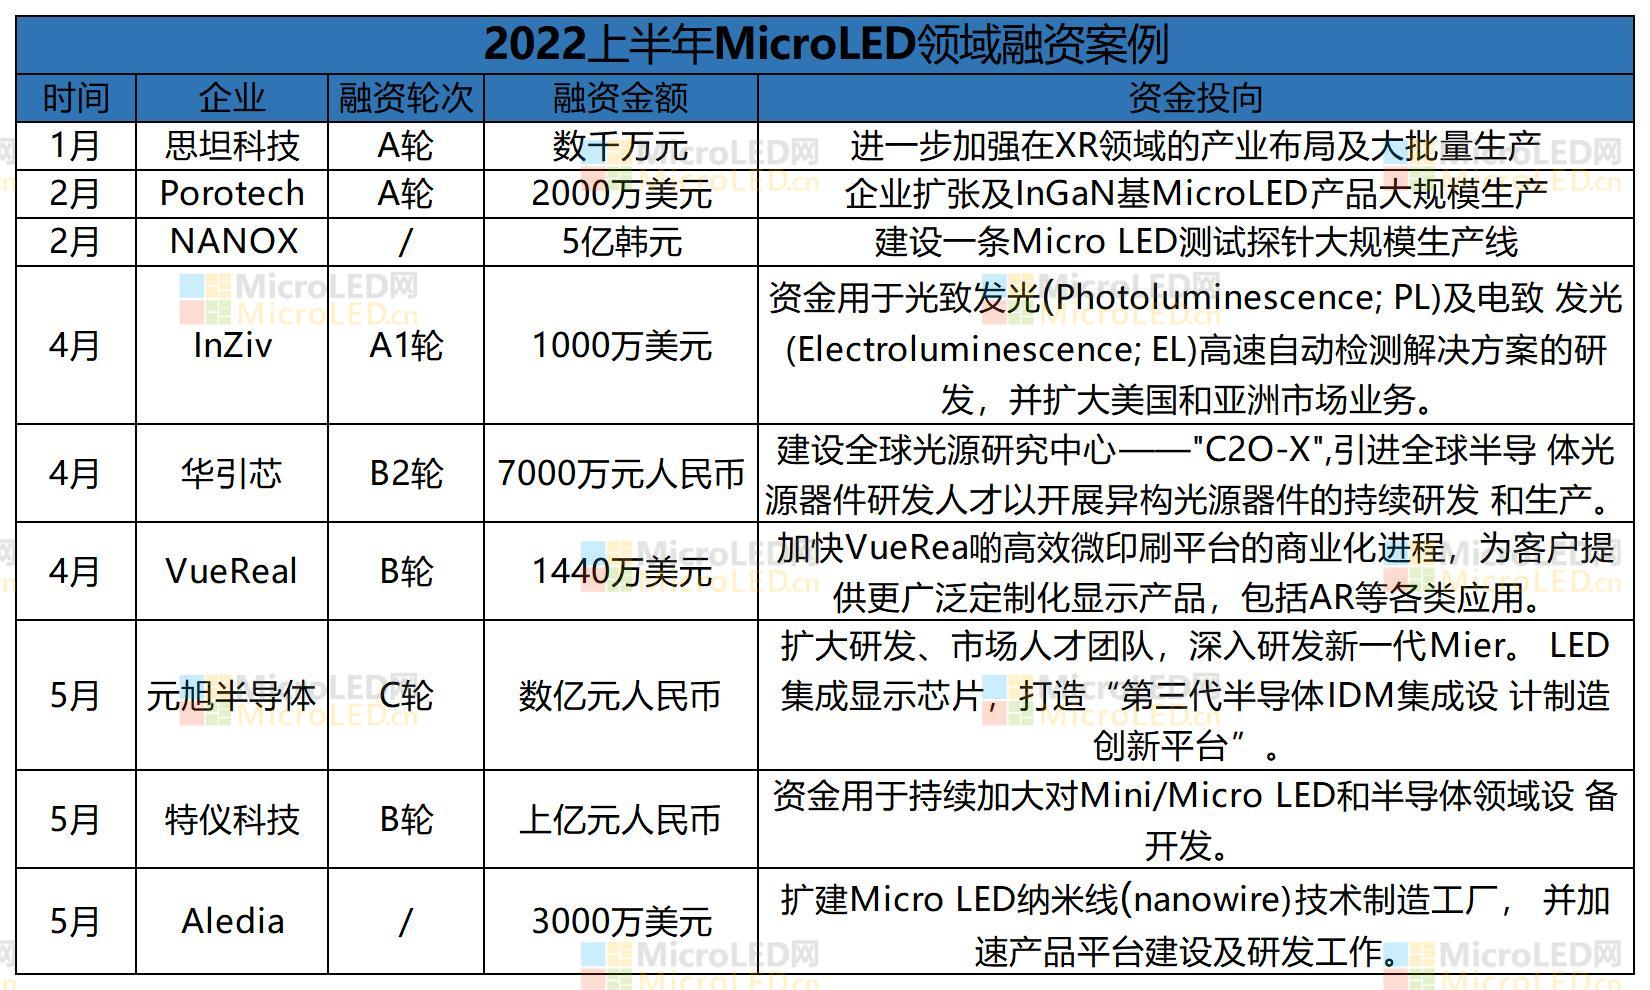 2022上半年microled动态_A1E11.jpg